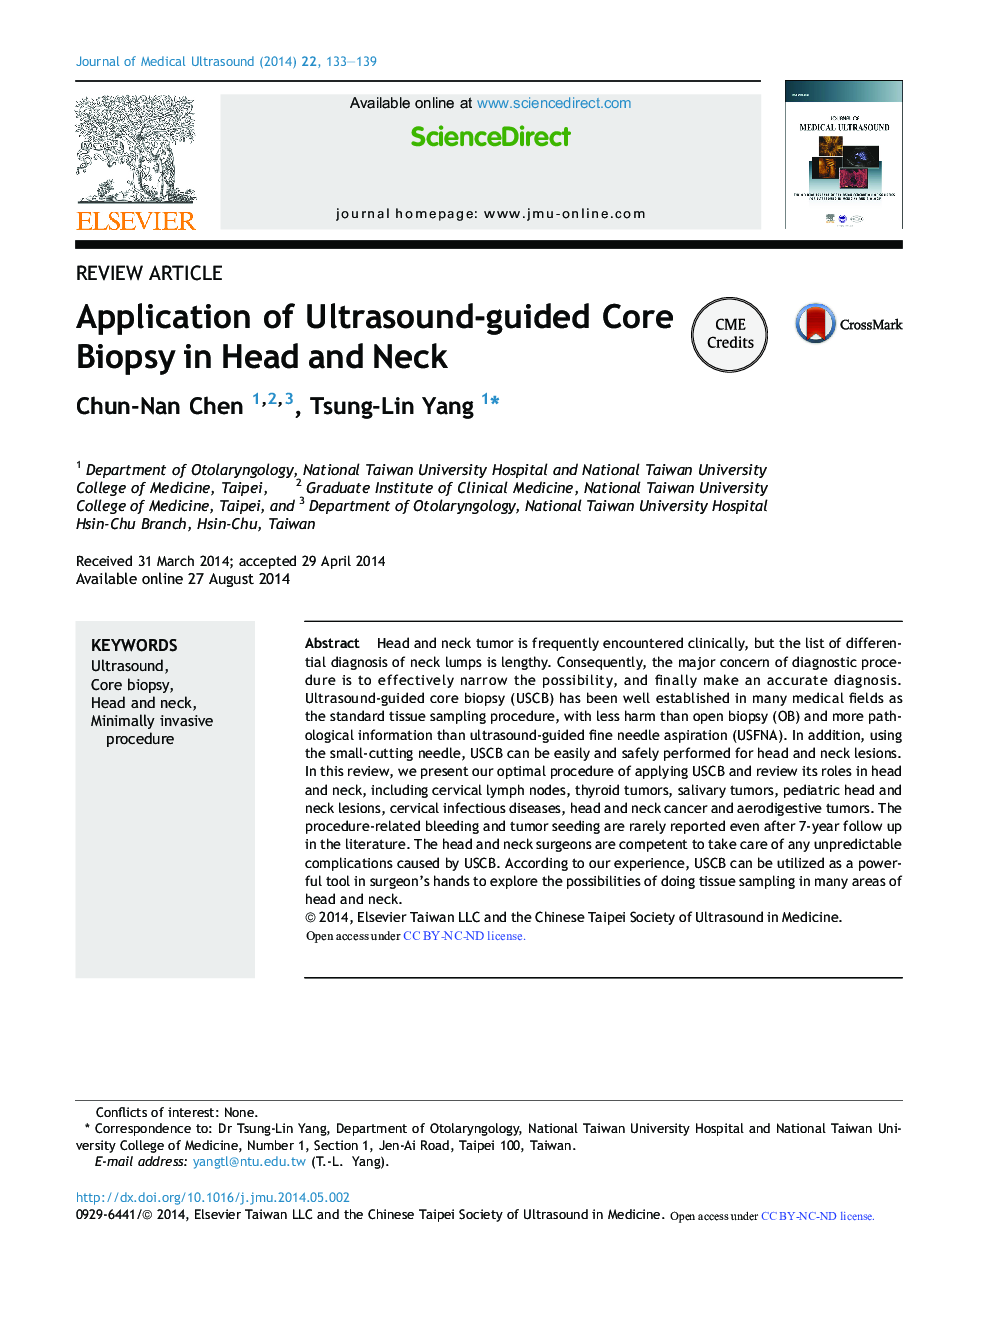 استفاده از بیوپسی هسته هدایت سونوگرافی در سر و گردن 